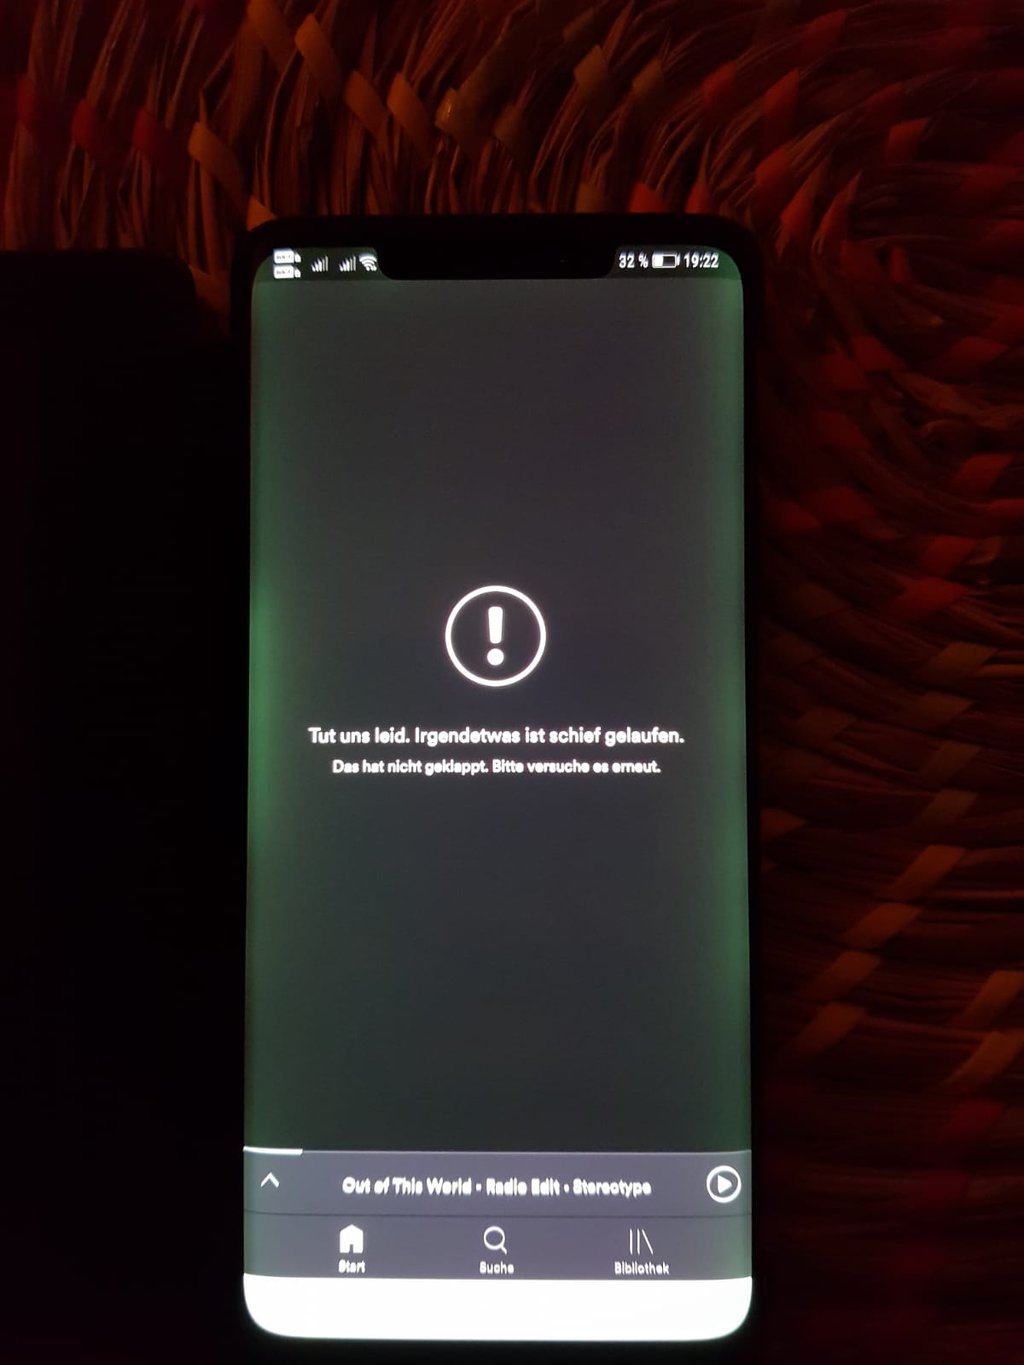 Tot Benodigdheden Dialoog Huawei Mate 20 Pro ma problem z ekranem. Polscy użytkownicy się skarżą,  odpowiada im cisza | gsmManiaK.pl